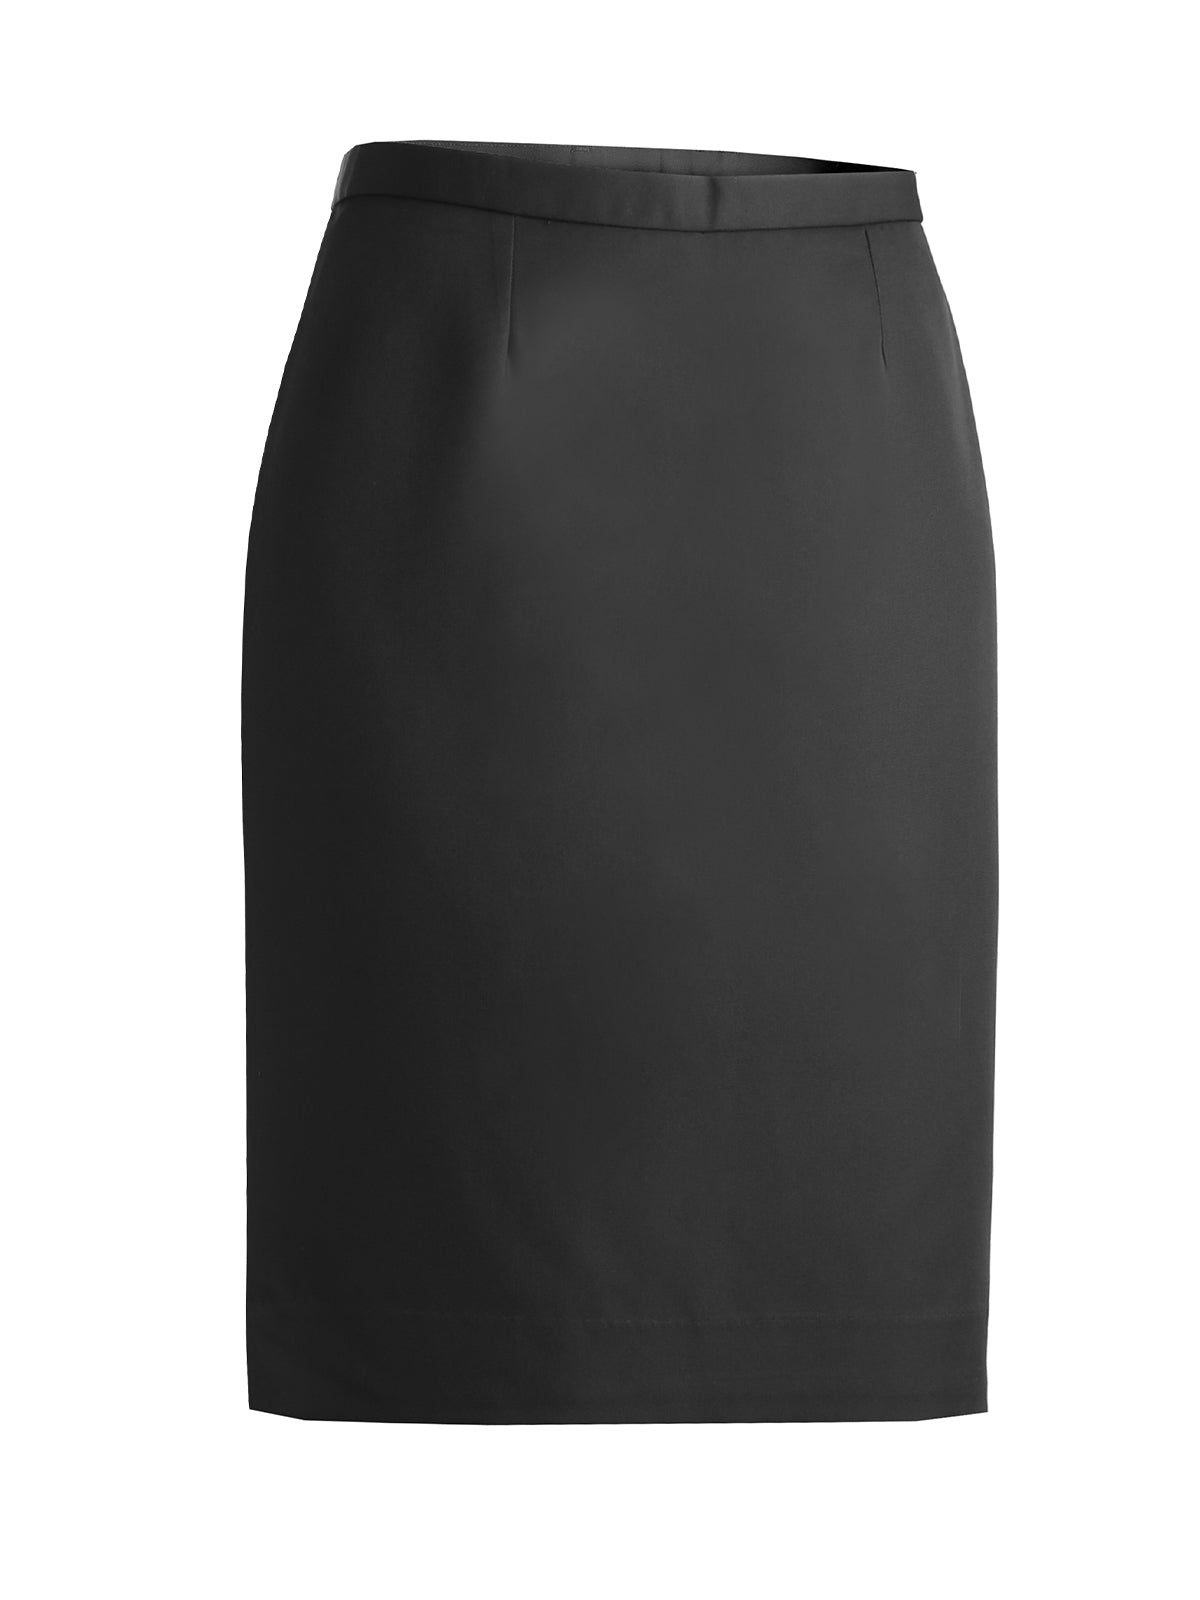 Women's Microfiber Skirt